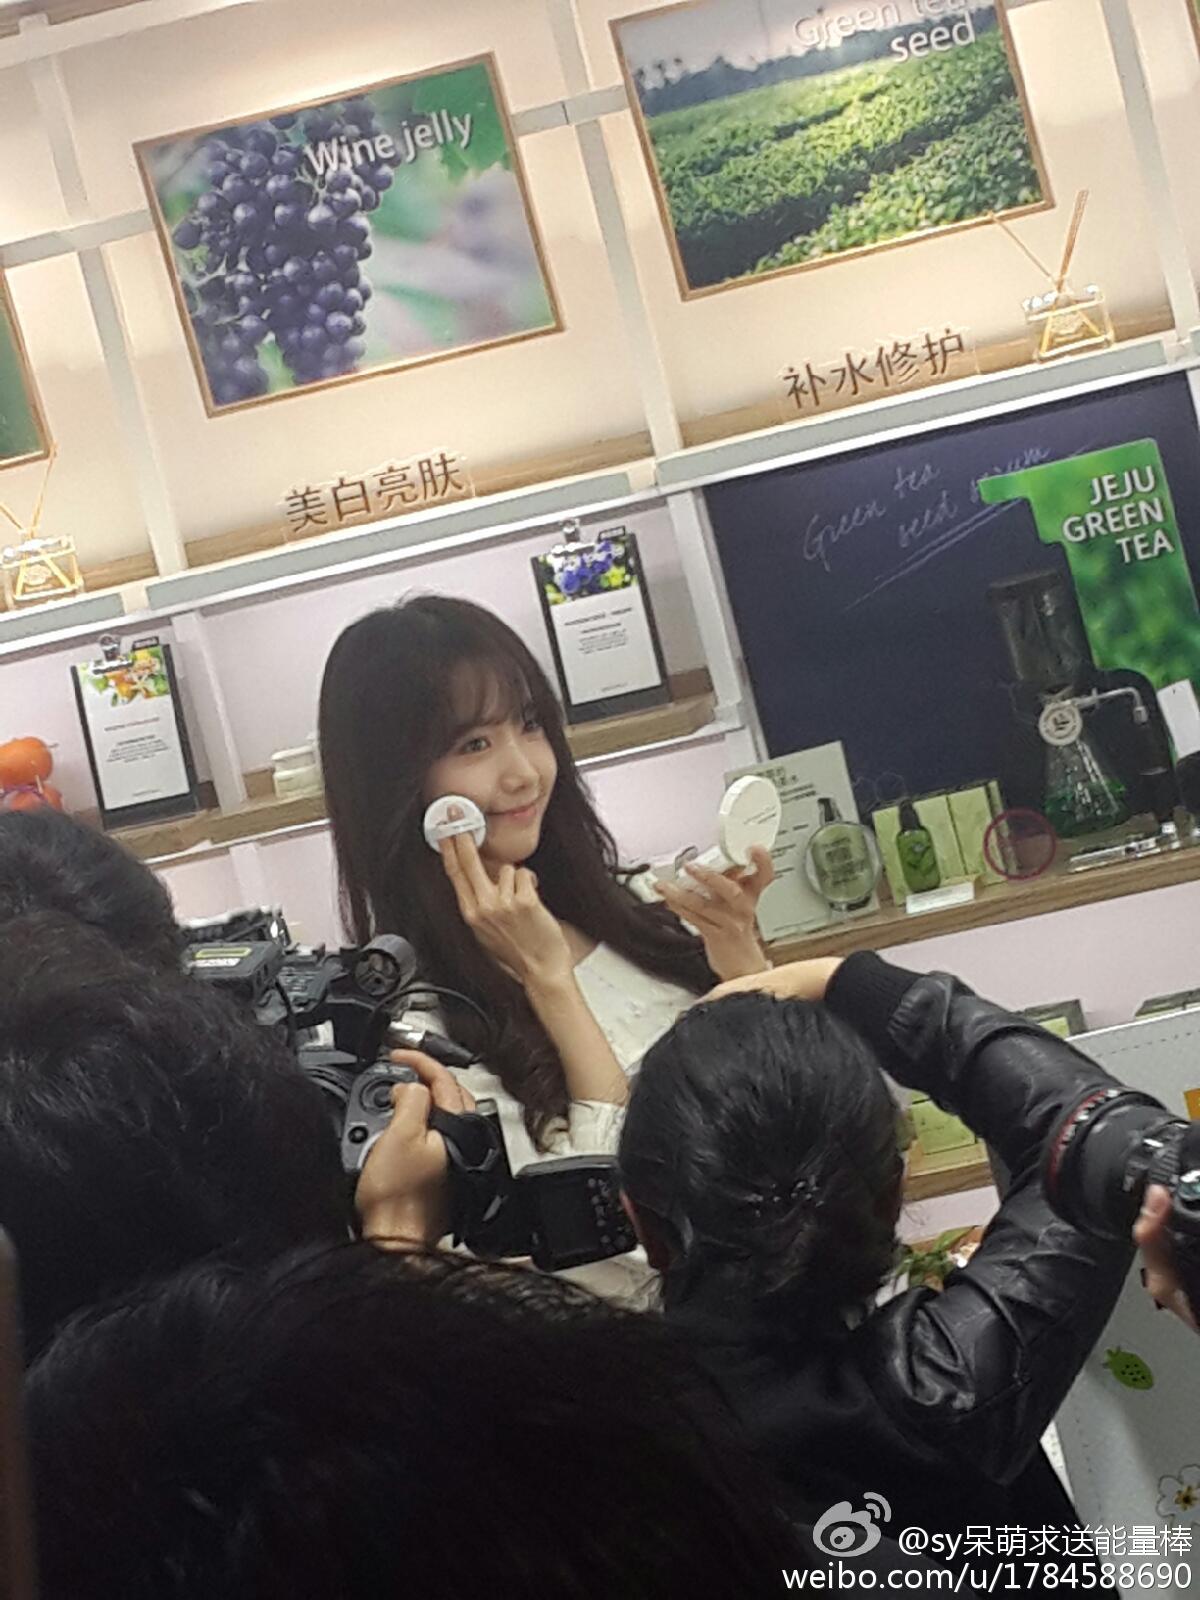 [PIC][15-01-2015]YoonA xuất hiện tại Thượng Hải - Trung Quốc để quảng bá cho sản phẩm mới của thương hiệu "Innisfree" vào trưa nay - Page 2 6a5ea992jw1eoa2zze78xj20xc18gjwg